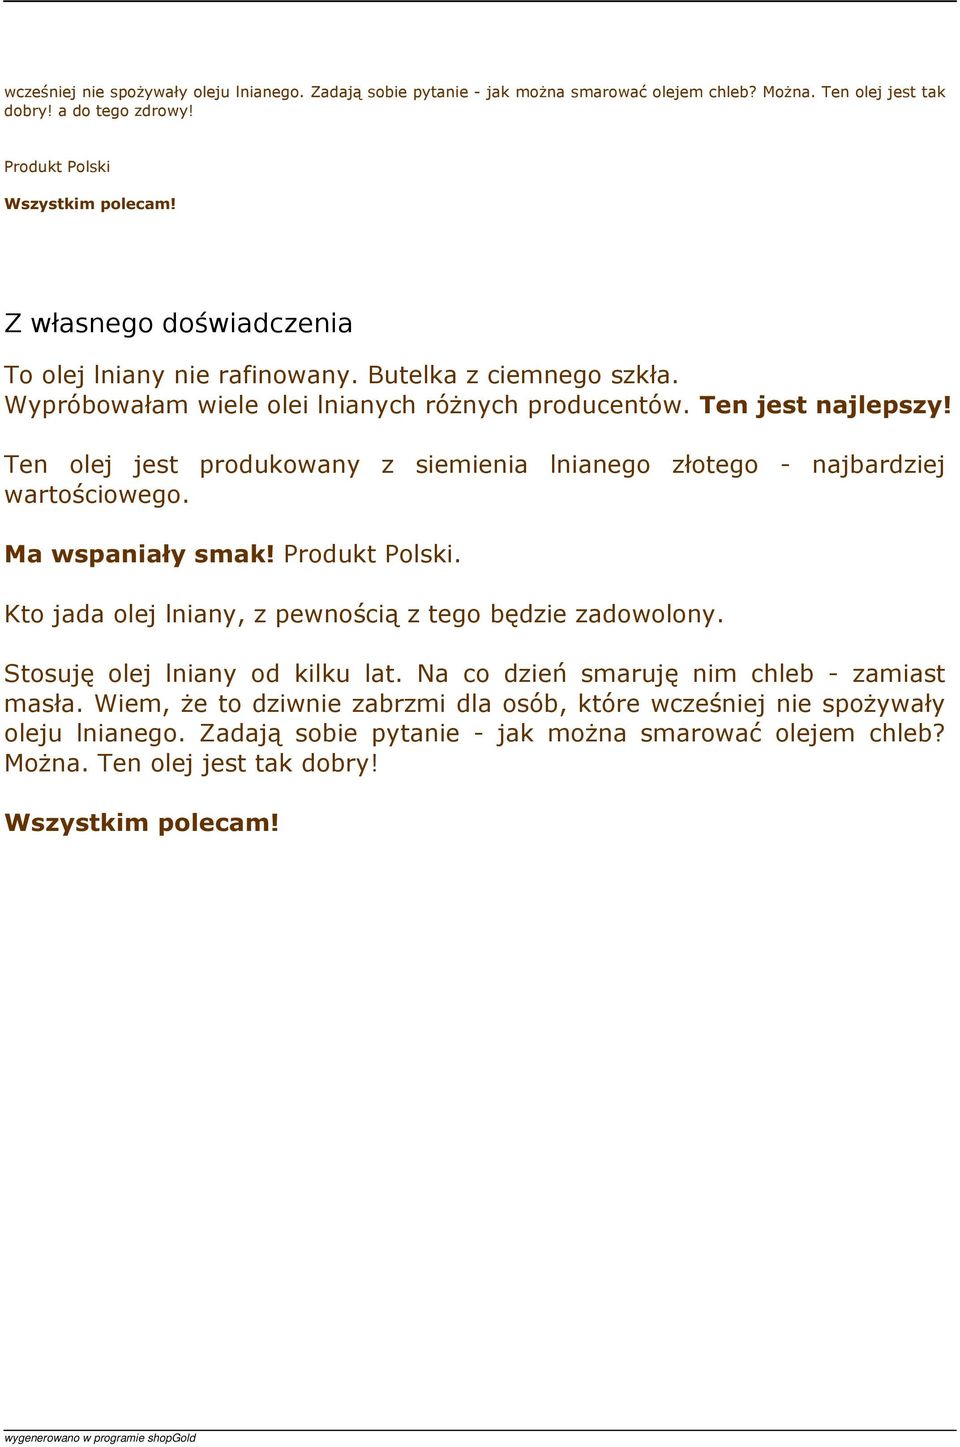 Ten olej jest produkowany z siemienia lnianego złotego - najbardziej wartościowego. Ma wspaniały smak! Produkt Polski. Kto jada olej lniany, z pewnością z tego będzie zadowolony.